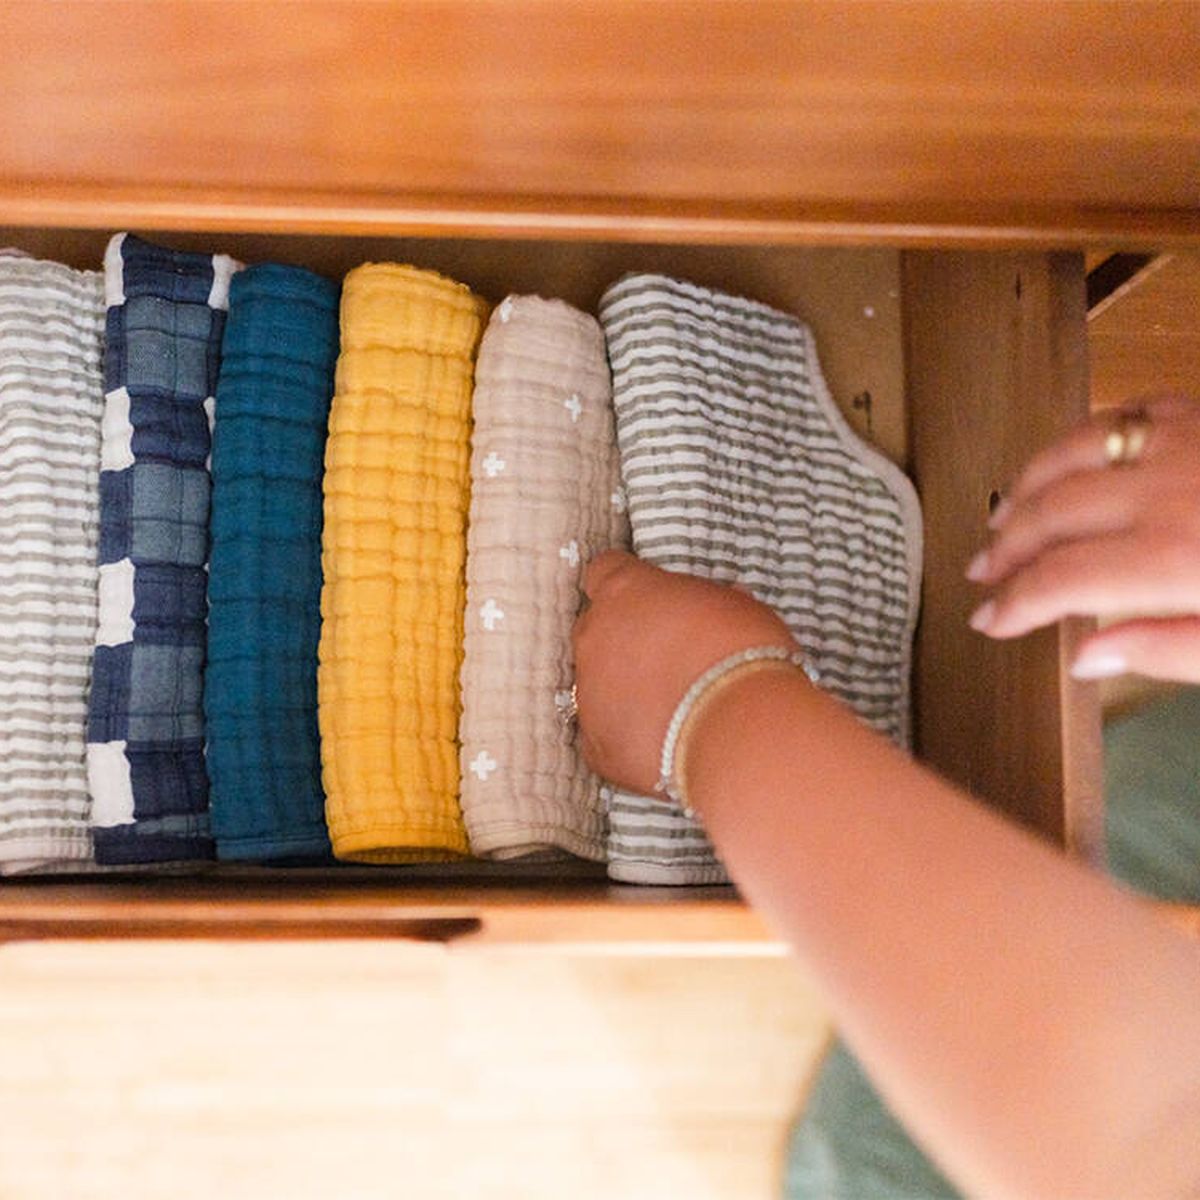 Aprende cómo quitar el olor a humedad del armario - OK HumedadesOK Humedades